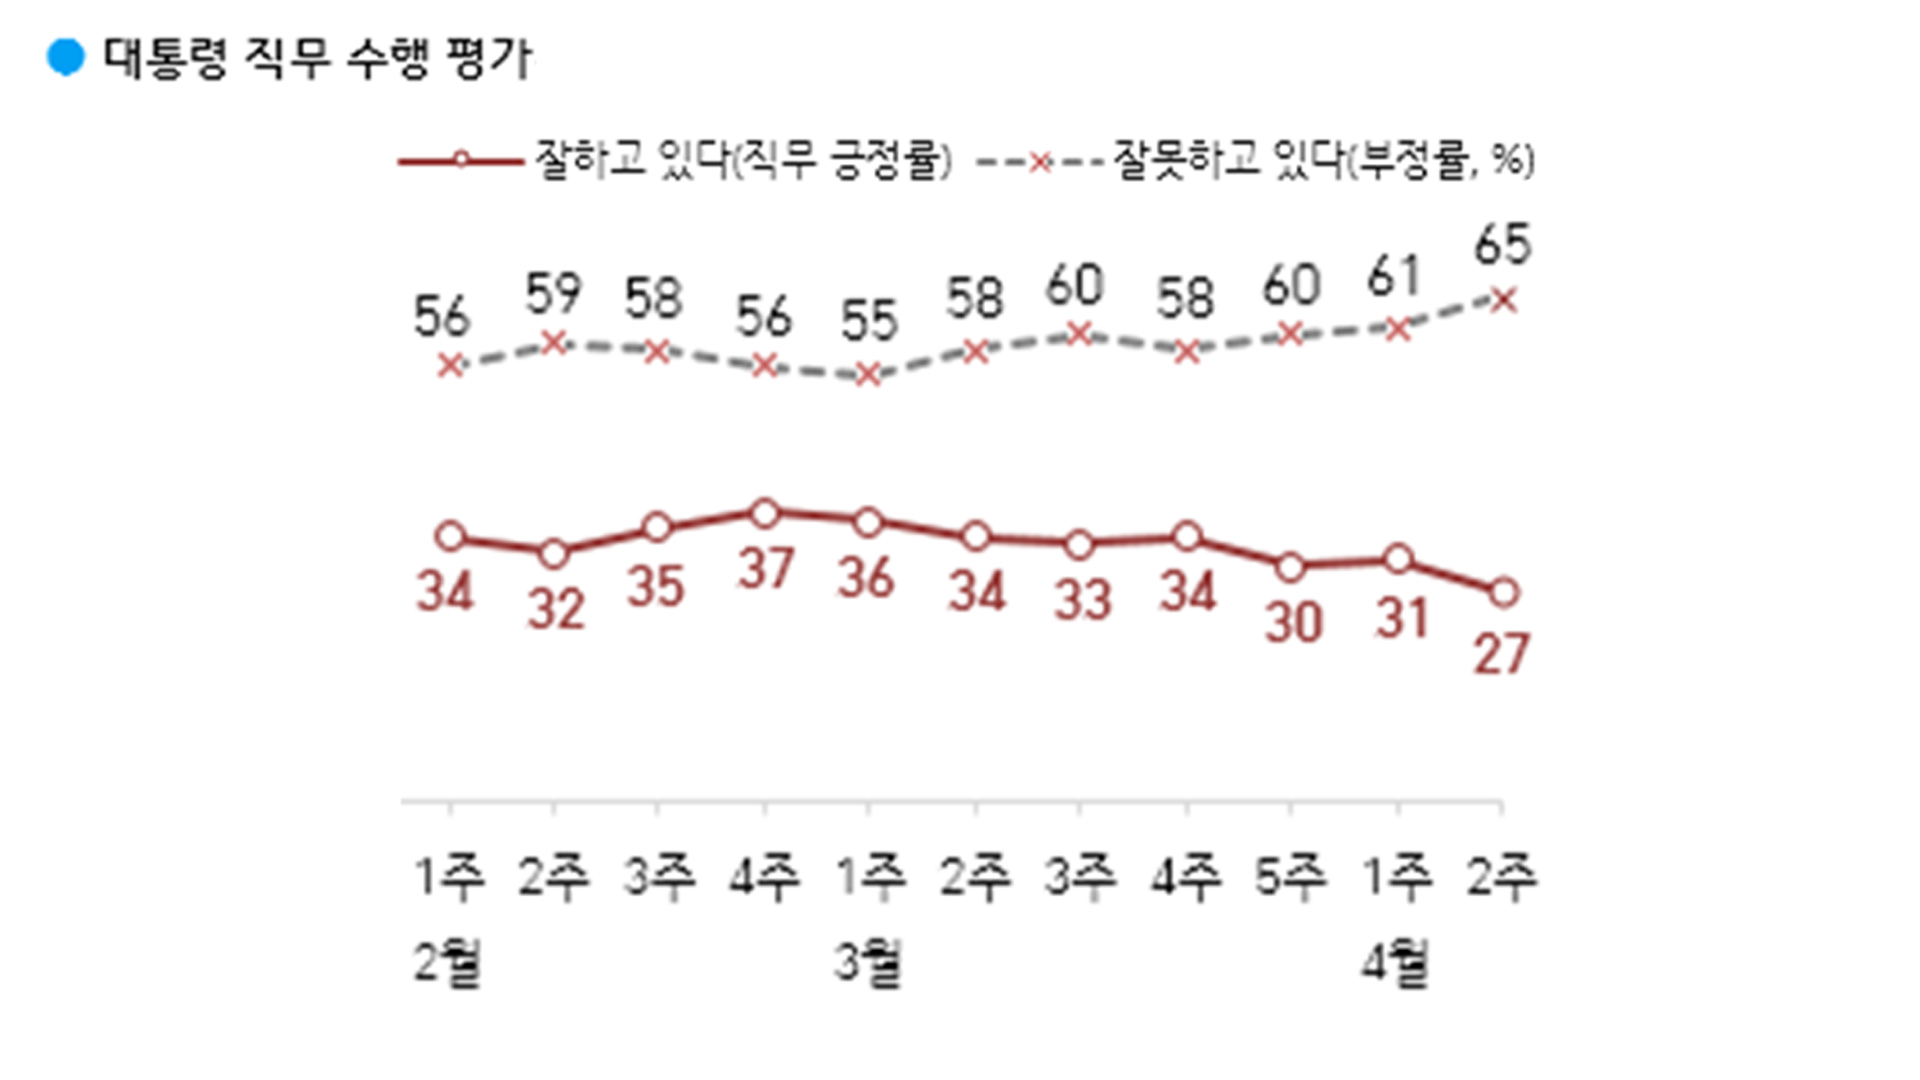 윤석열 대통령 지지율 27%.. 